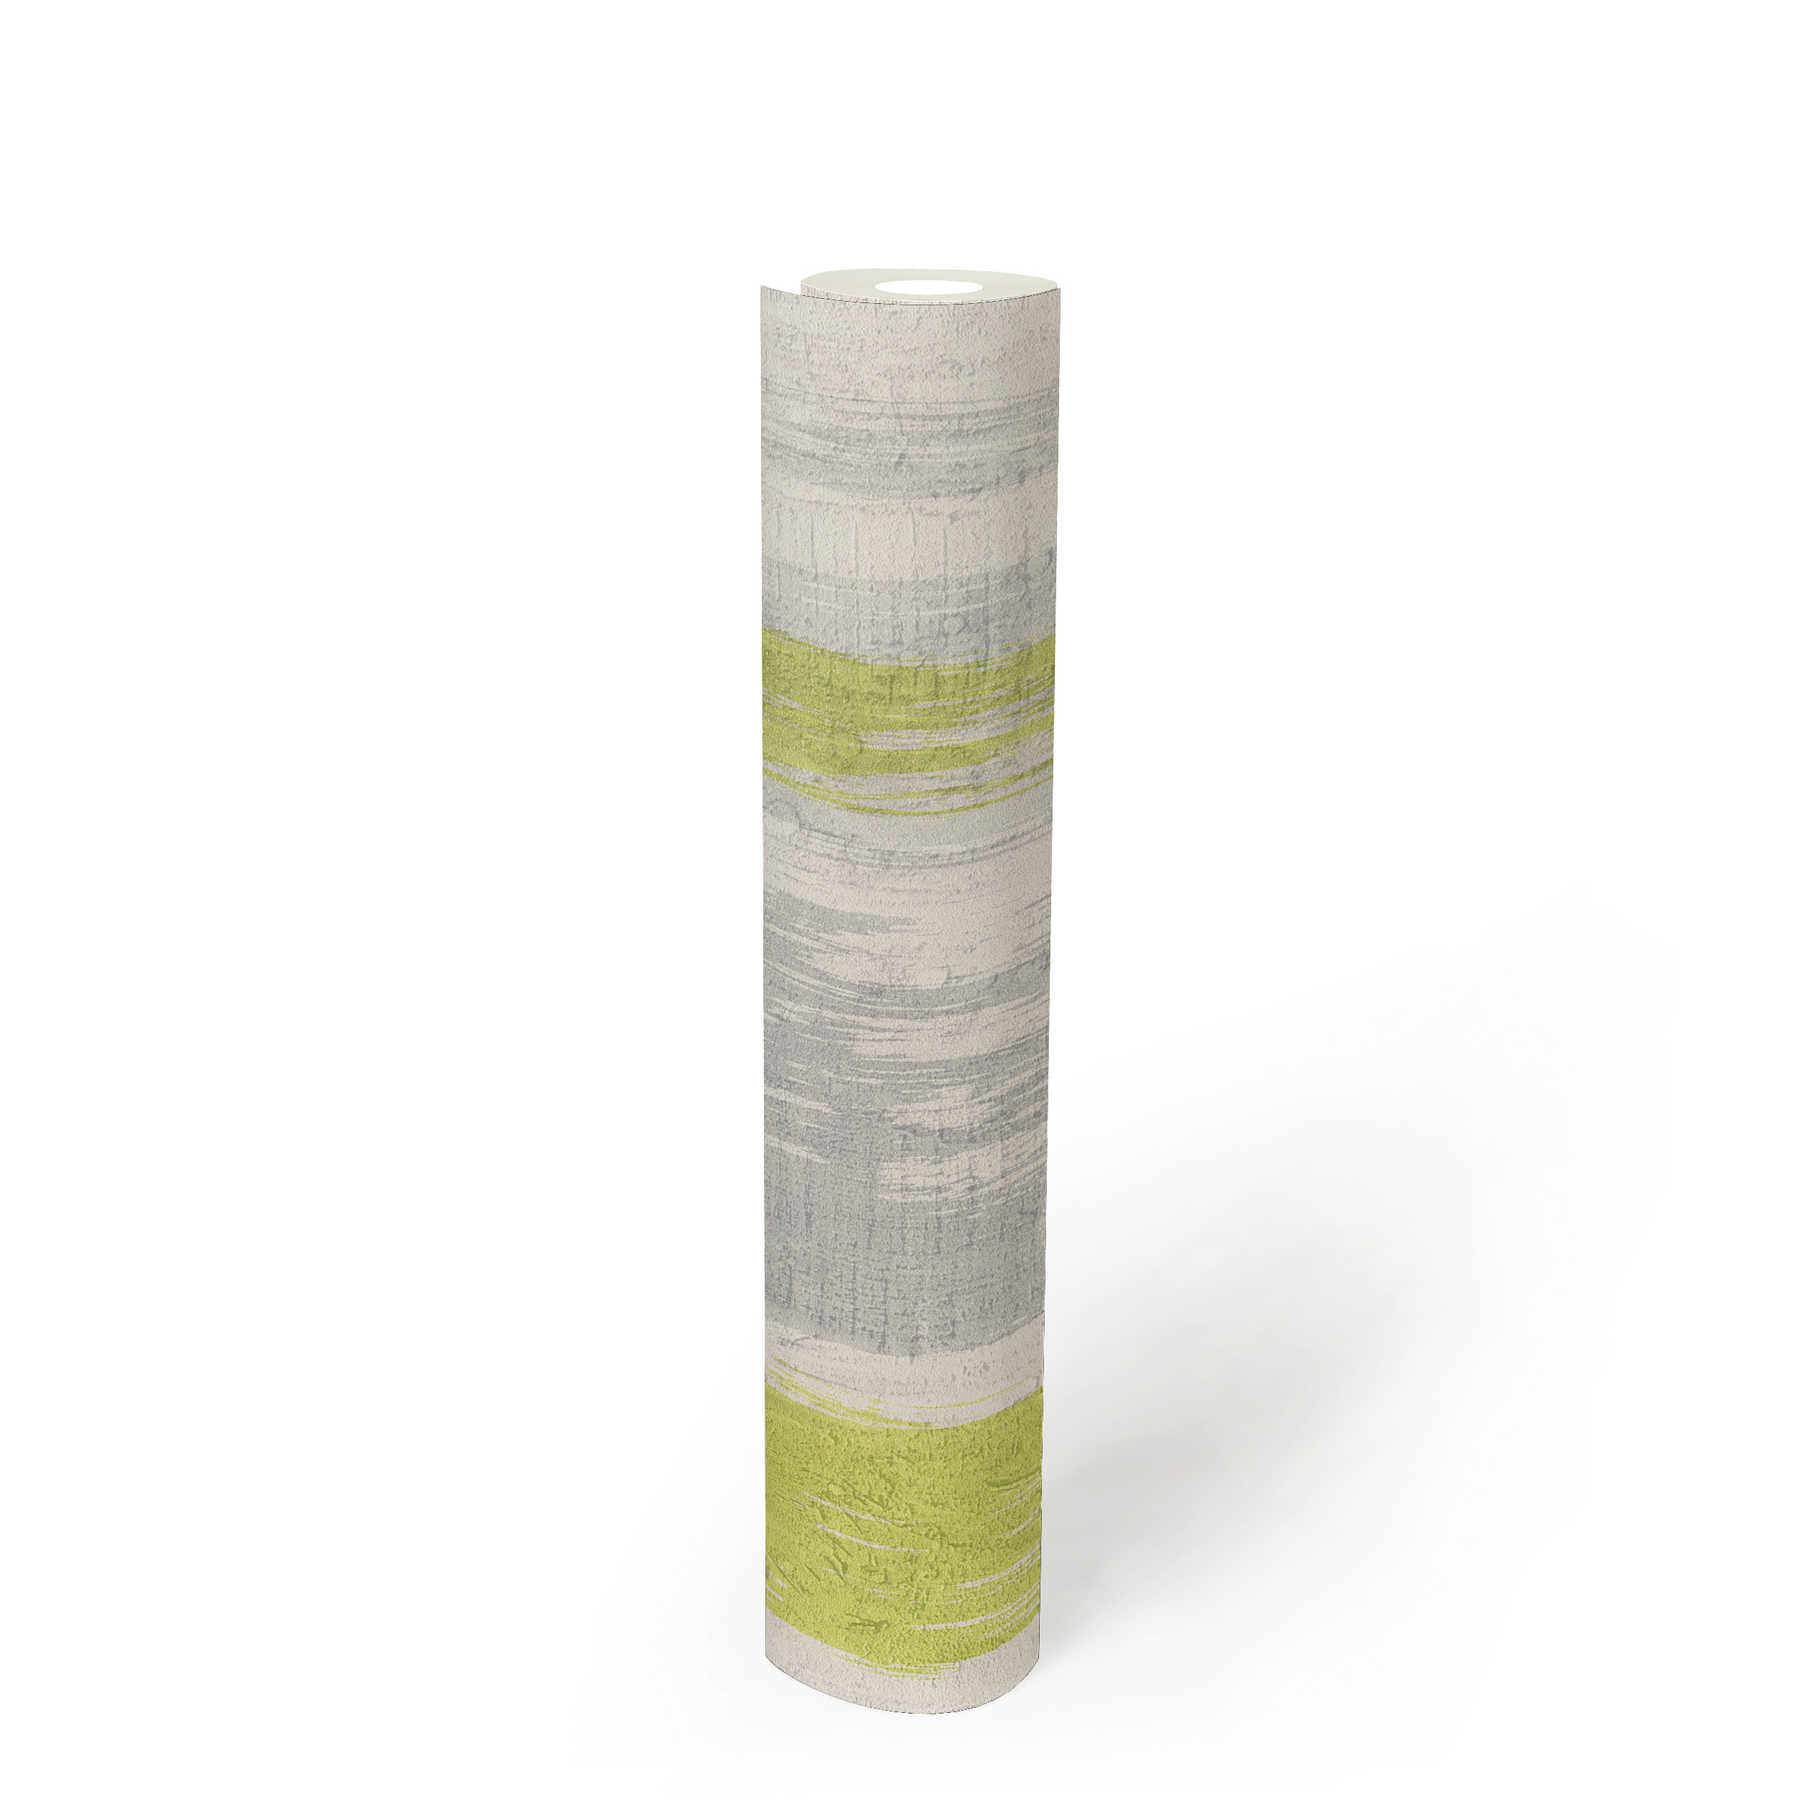             Streifentapete mit Putzstruktur & farbigem Akzent – Grau, Grün, Gelb
        